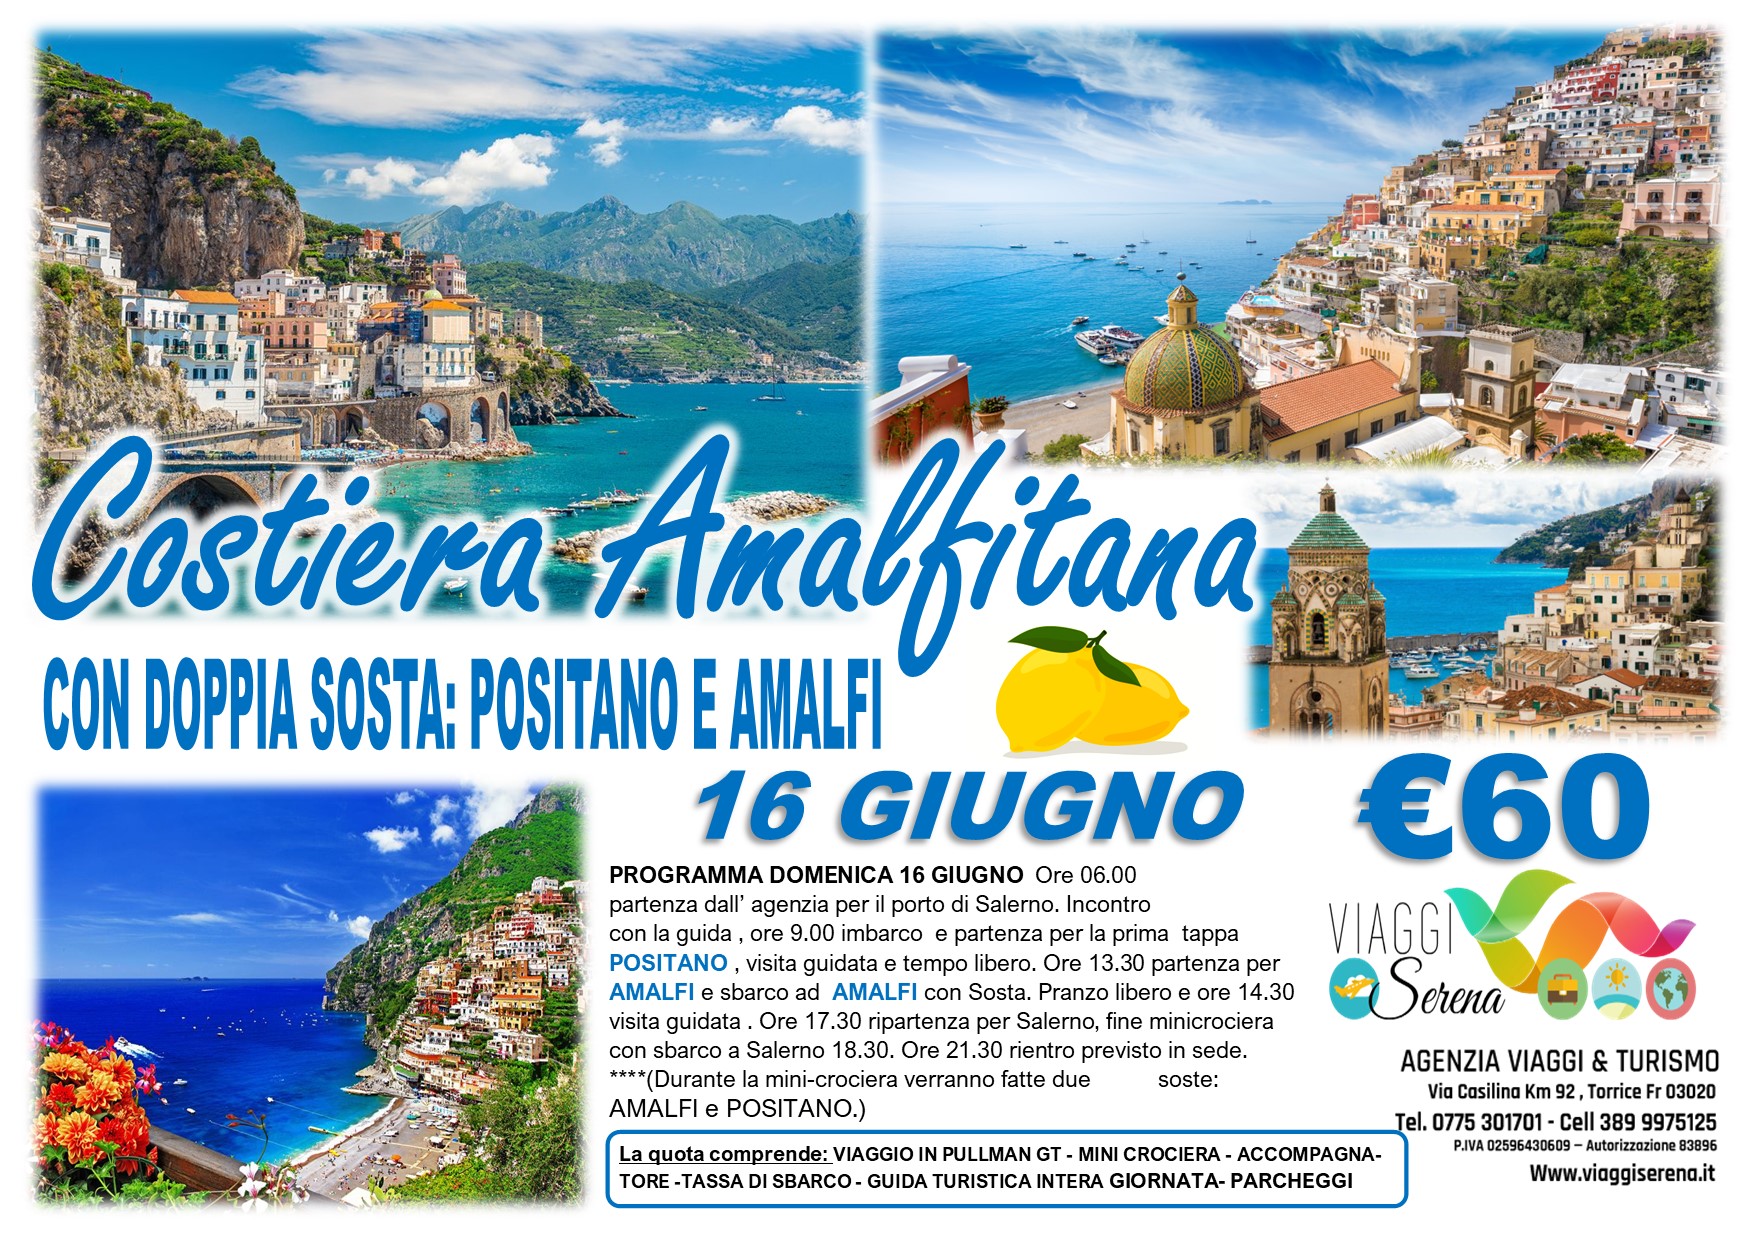 Viaggi di gruppo: Mini Crociera Costiera Amalfitana “Amalfi & Positano” 16 Giugno € 60,00